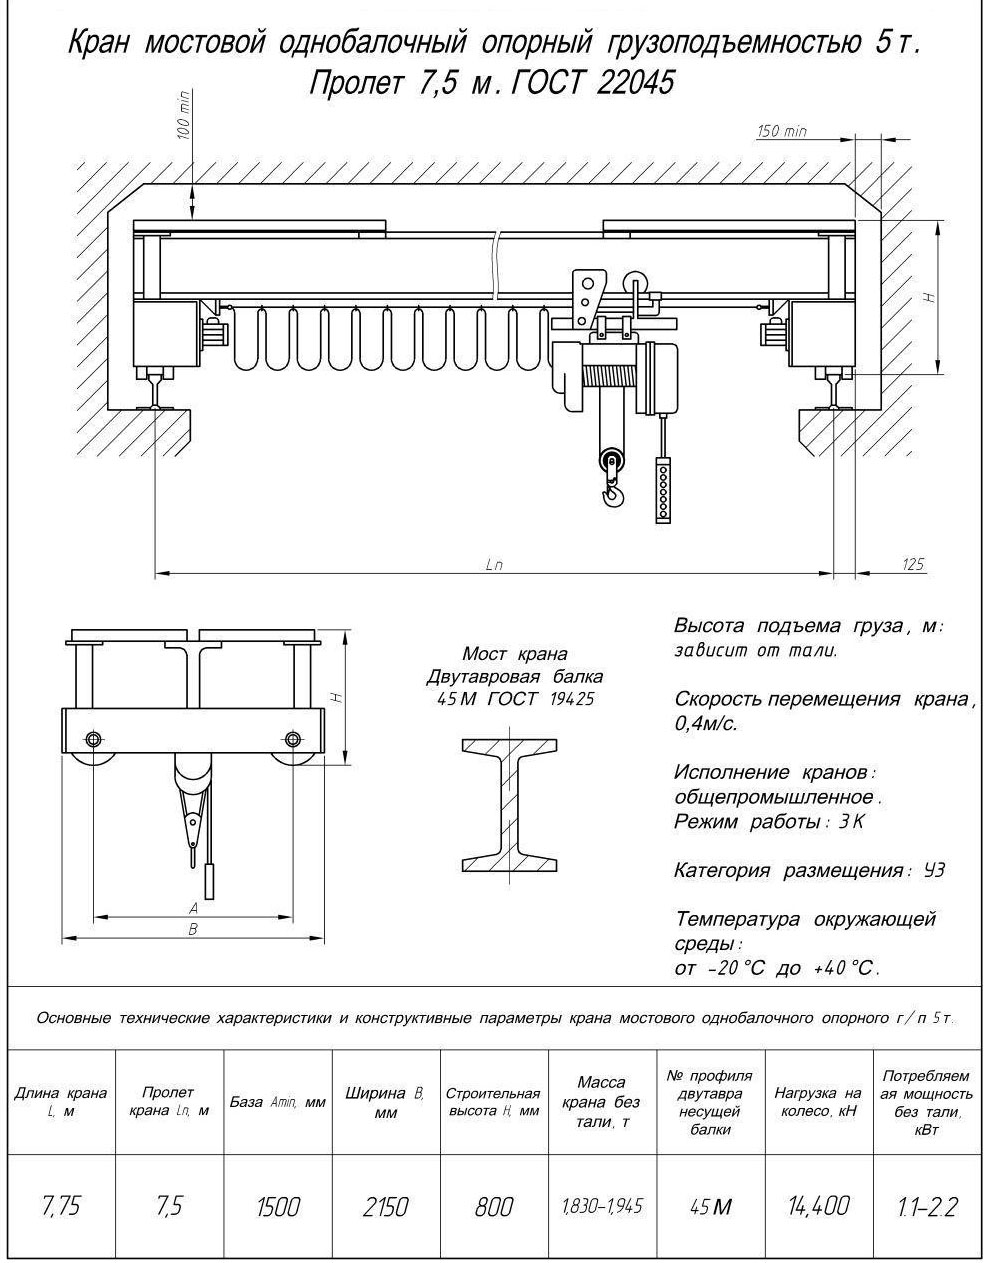 Чертеж и характеристики кран-балка электрическая опорная 5 т пролет 7,5 м